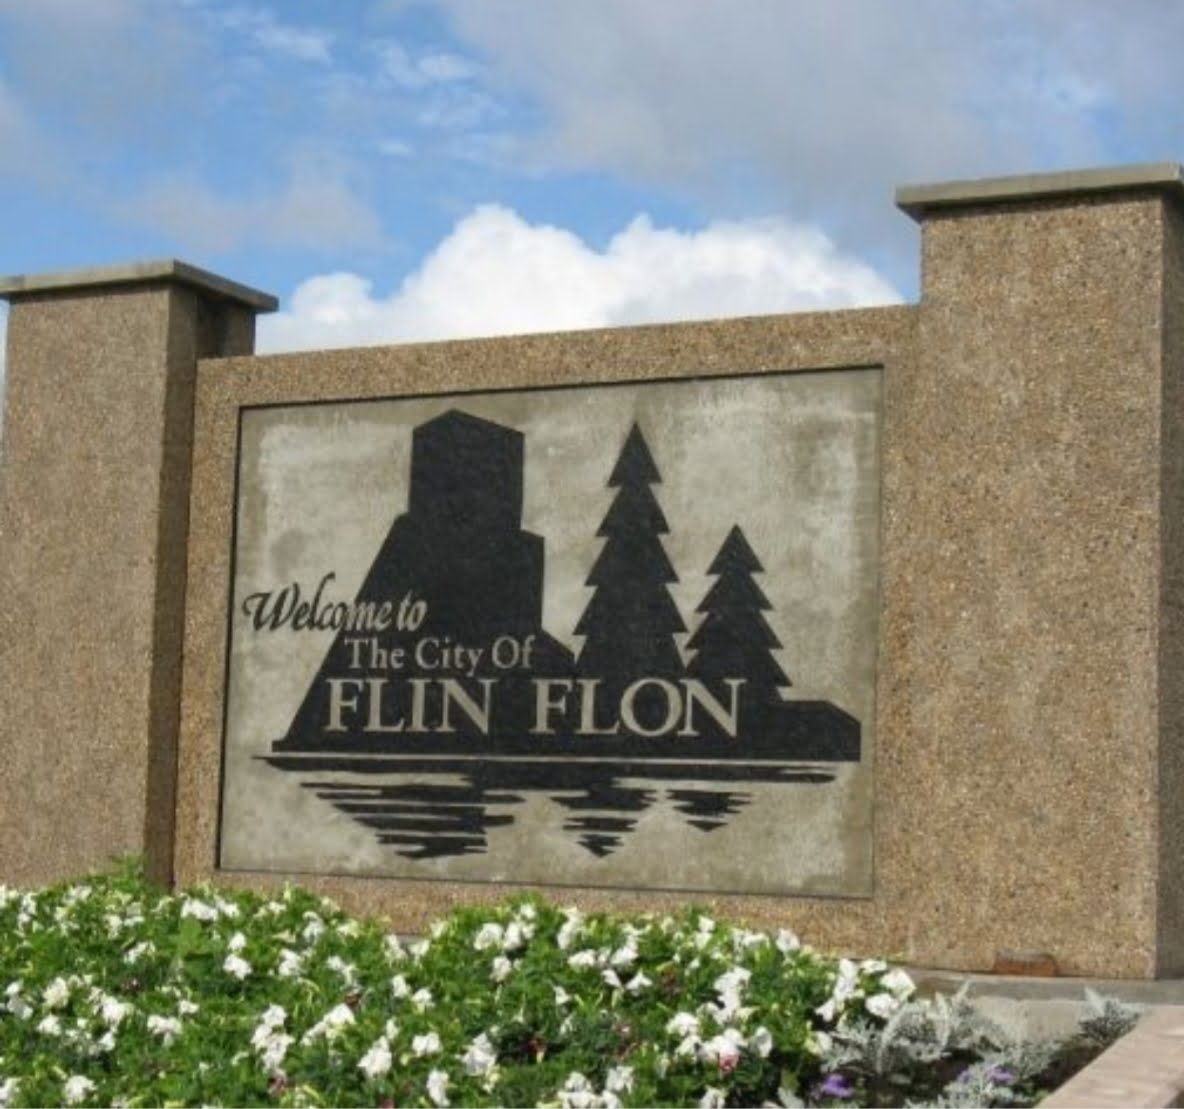 City of Flin Flon